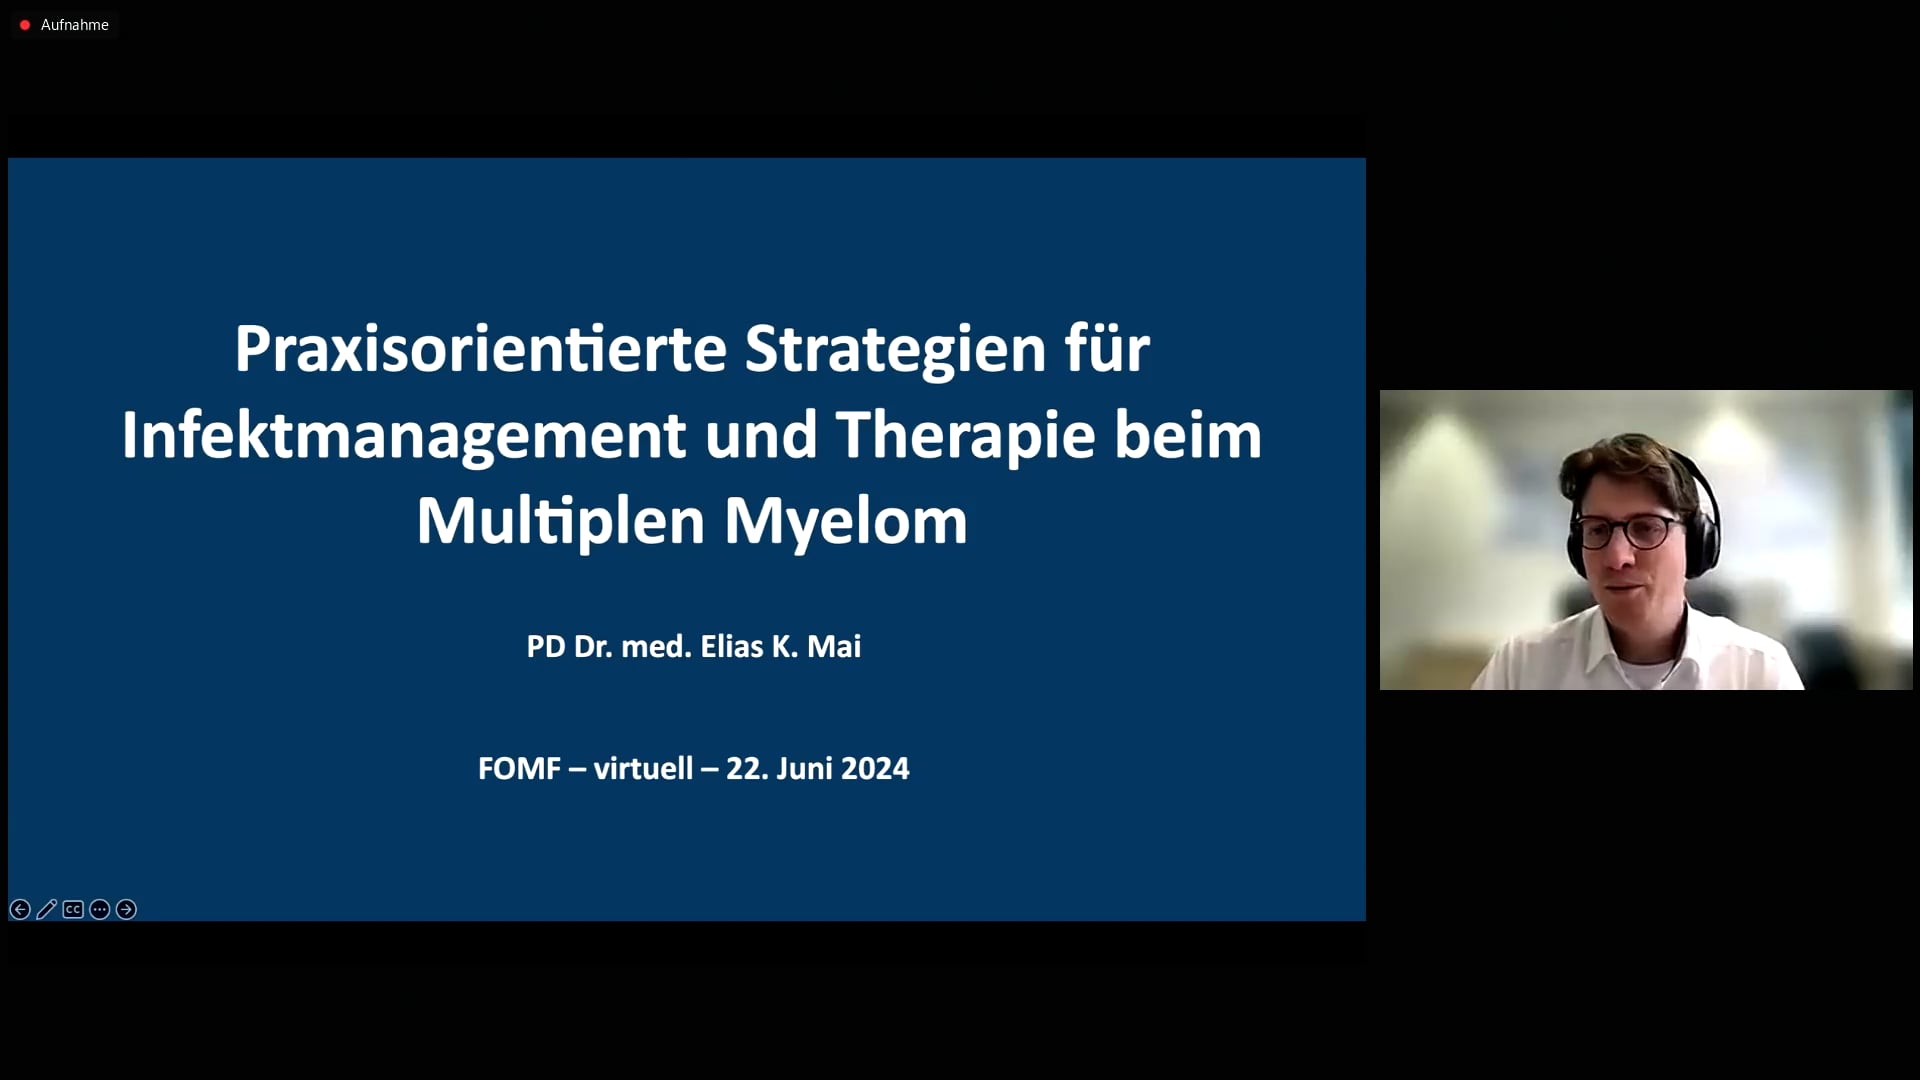 Praxisorientierte Strategien für Infektmanagement und Therapie beim Multiplen Myelom